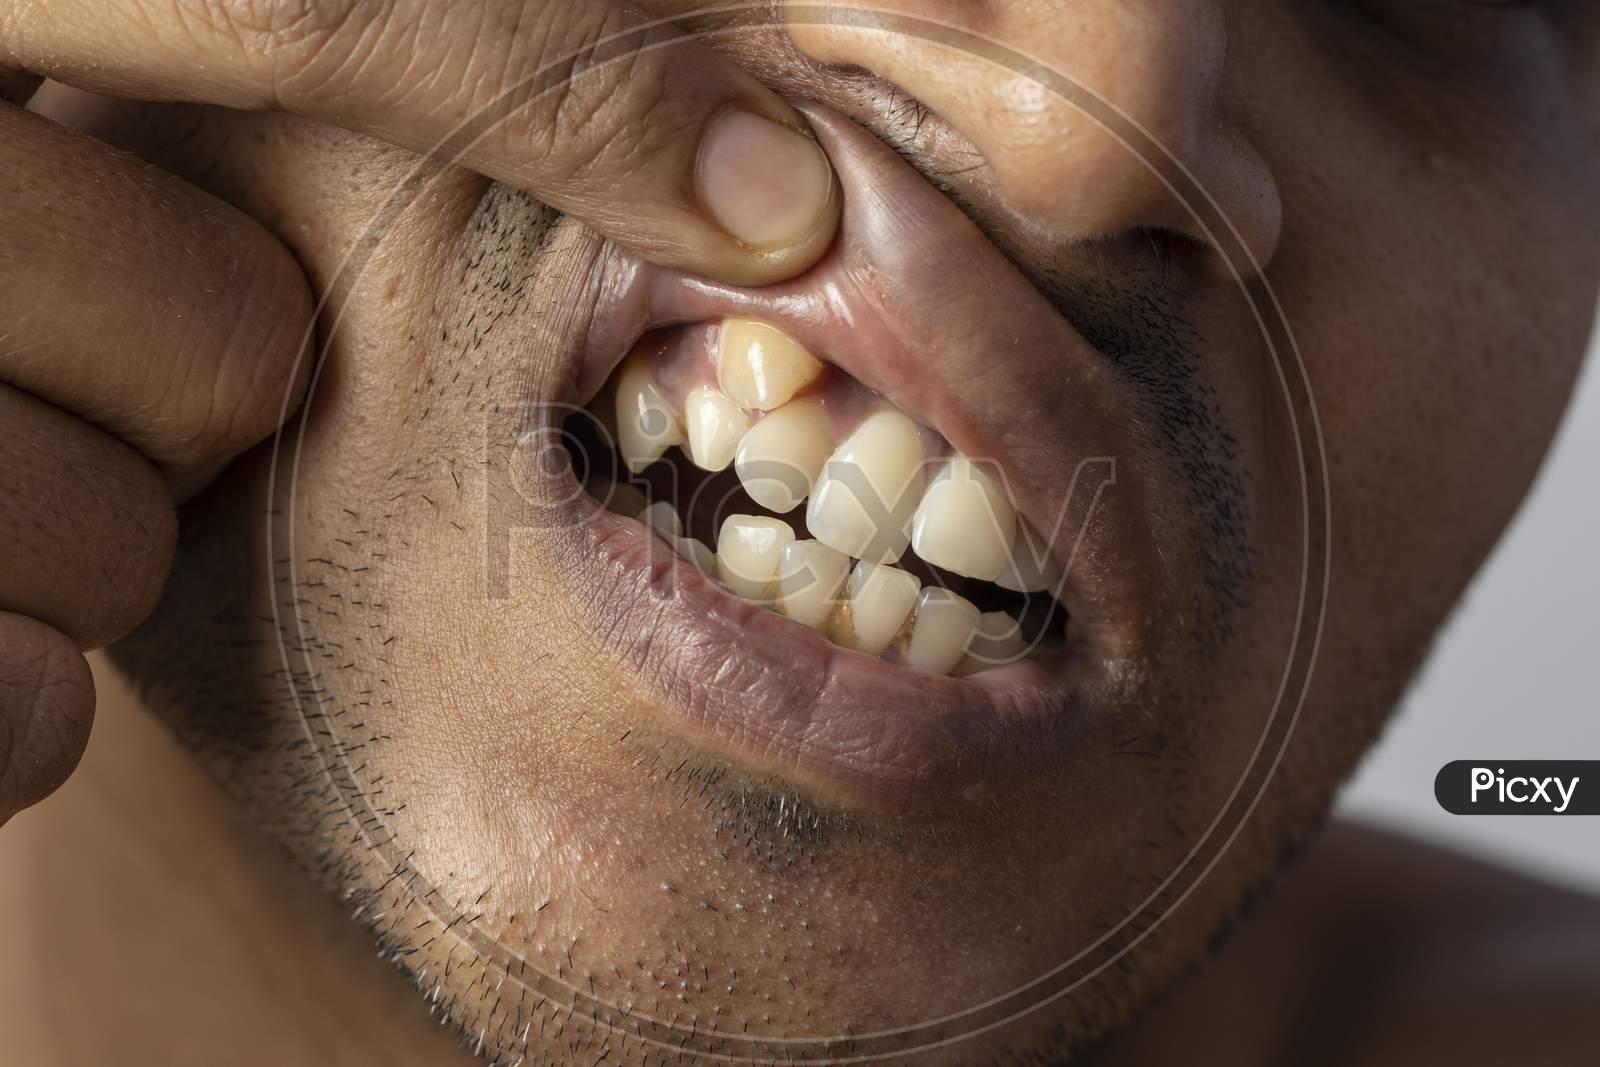 Irregular Teeth